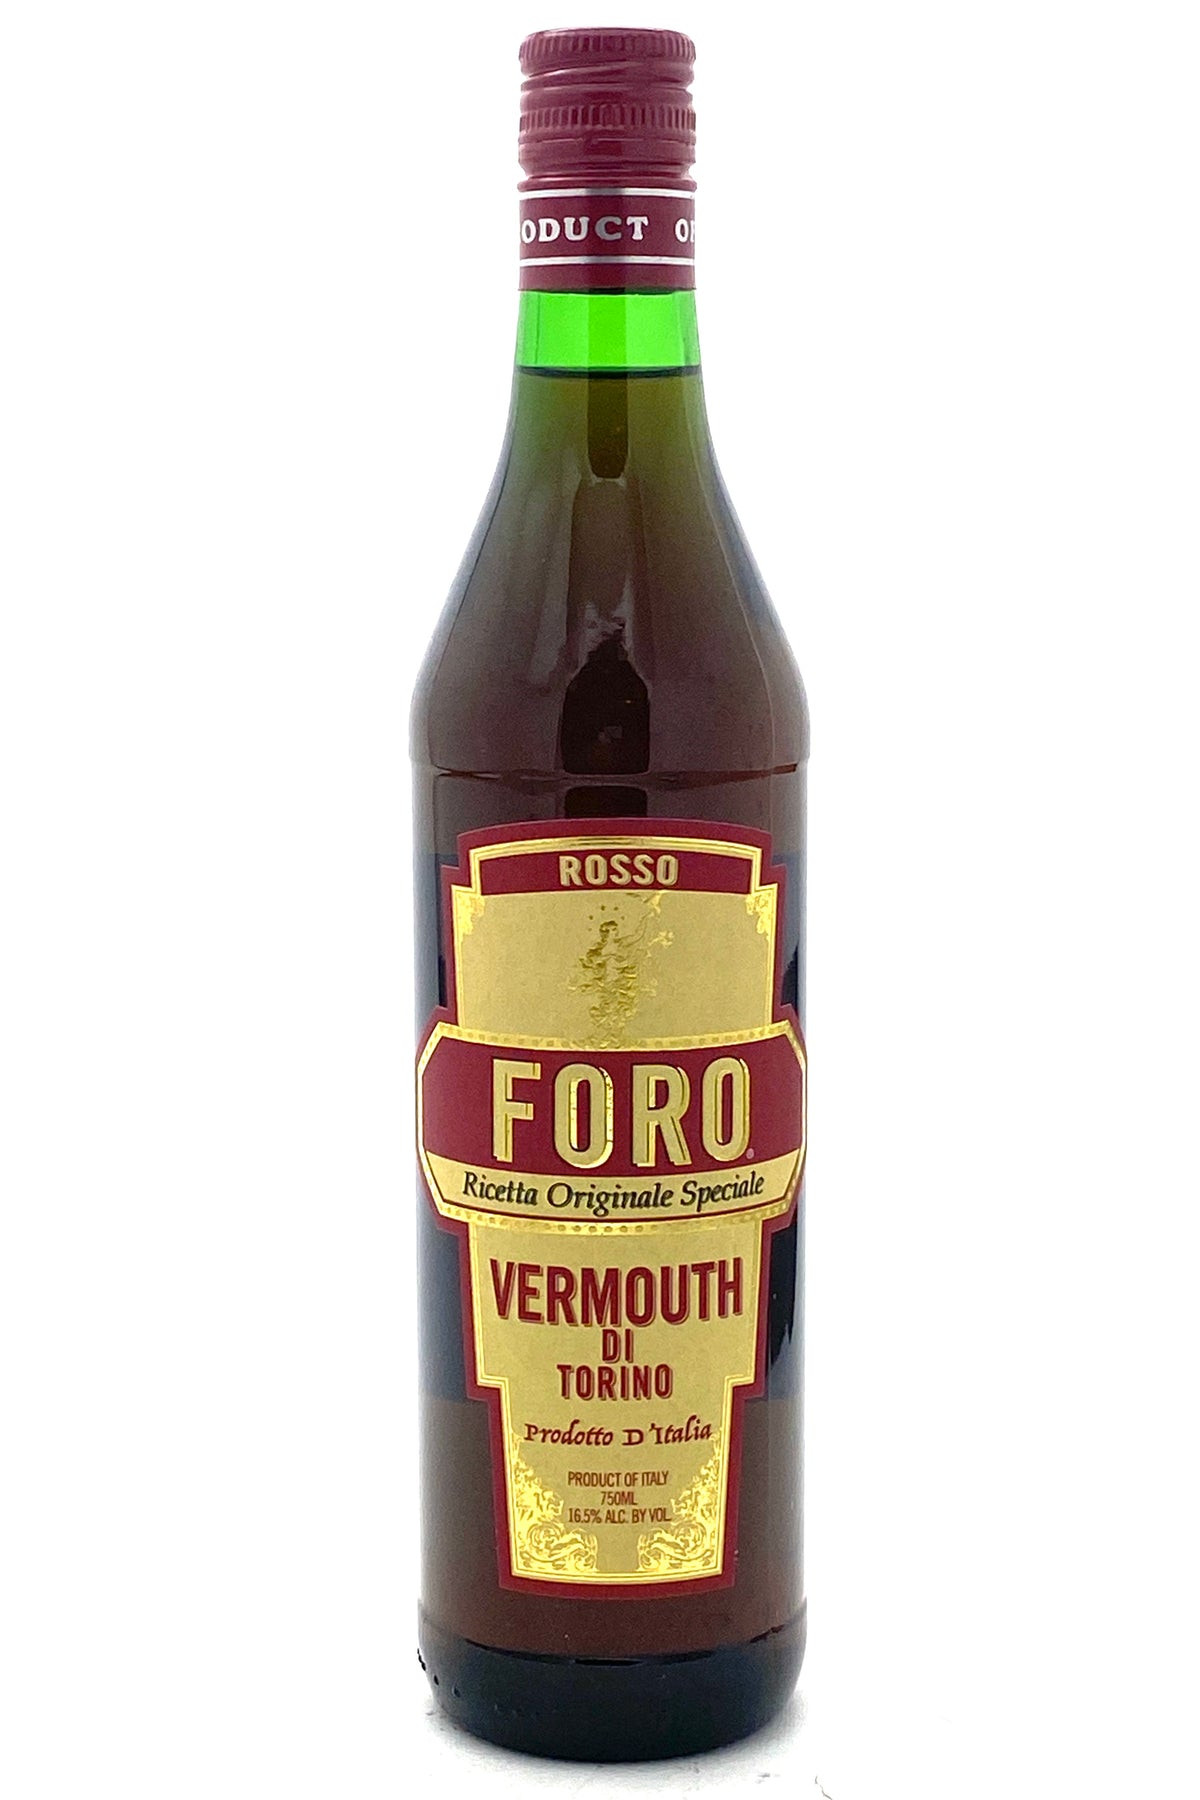 Foro Rosso Vermouth di Torino